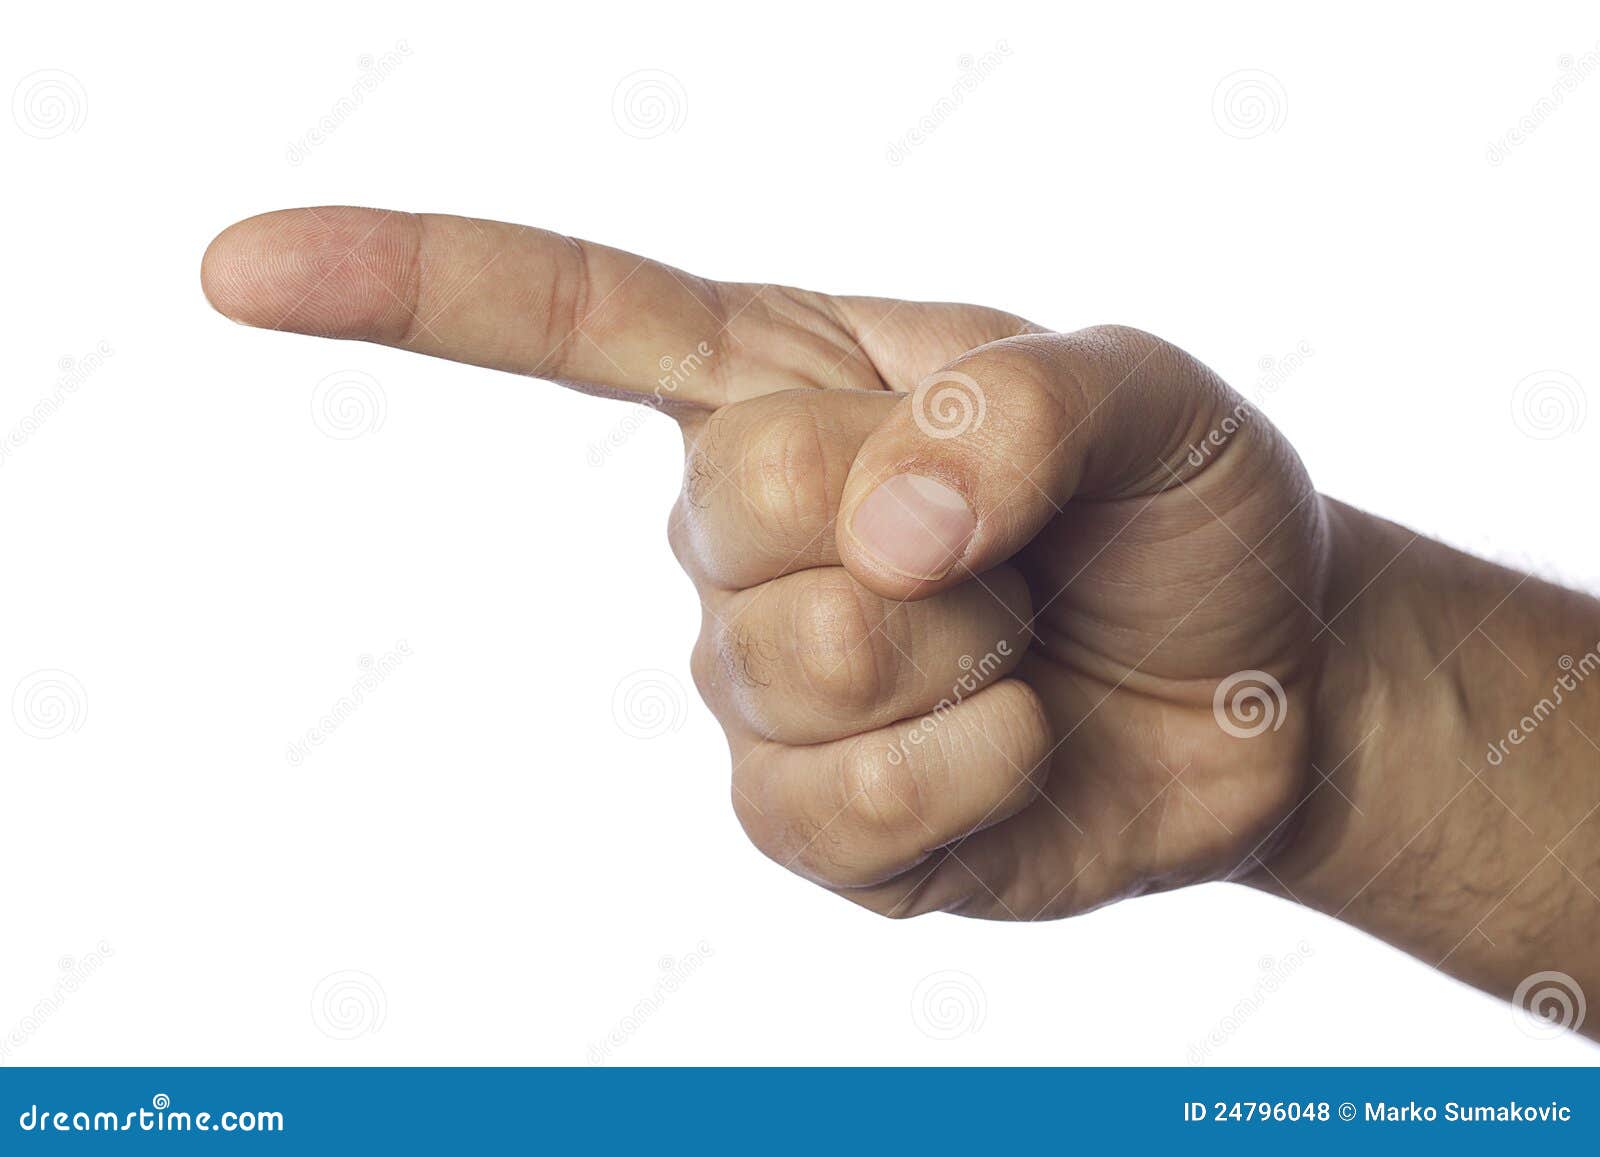 finger pointing